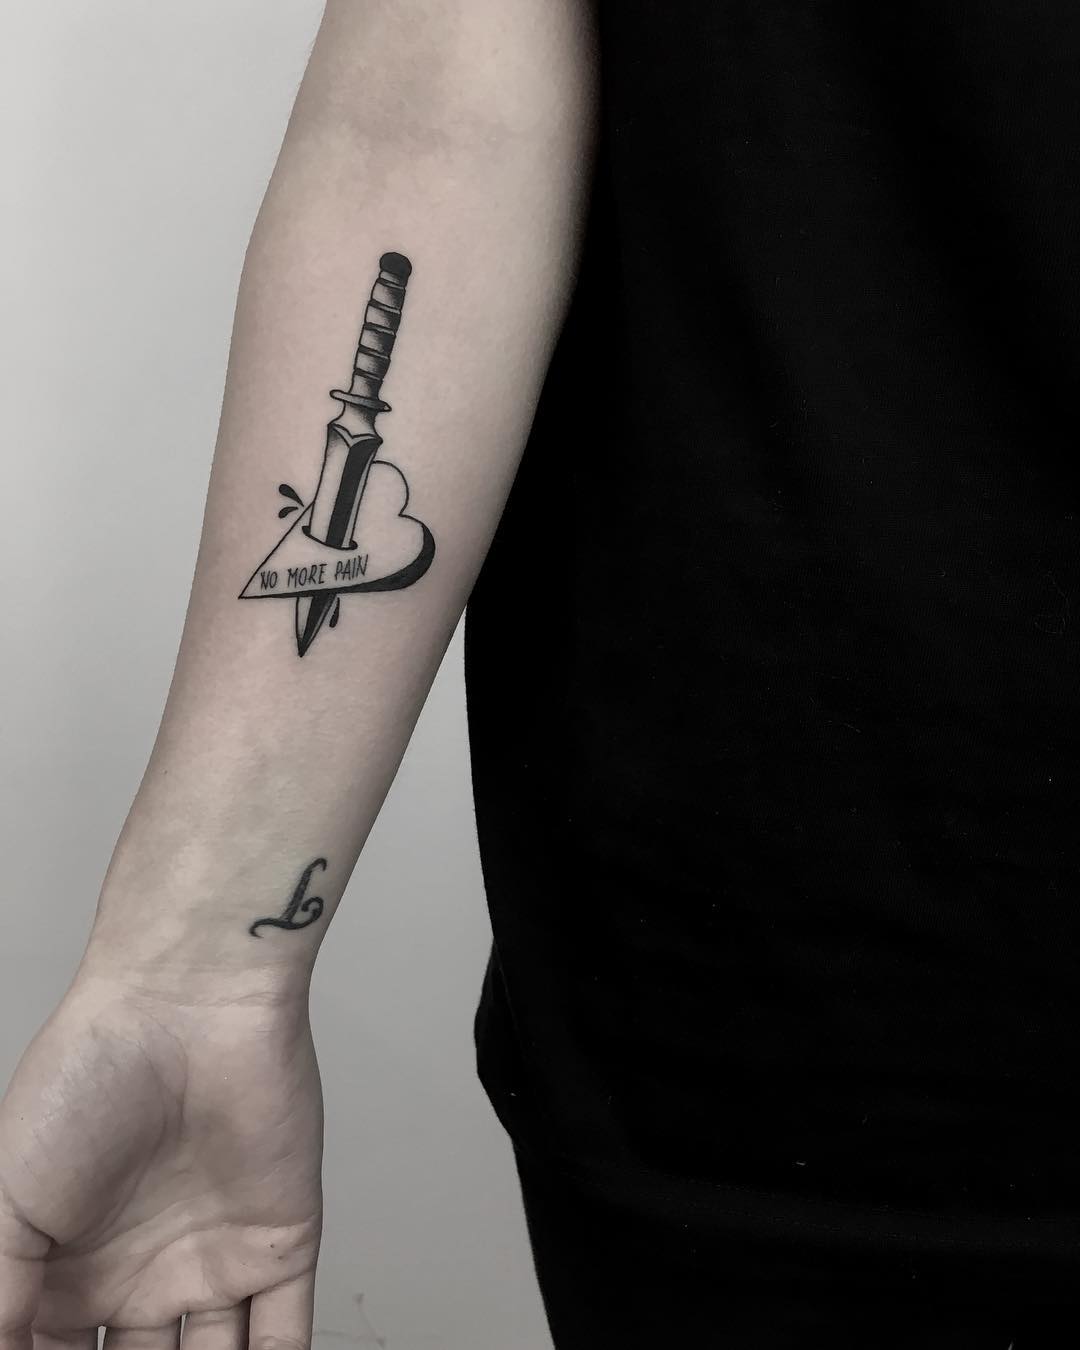 No more pain tattoo by Krzysztof Szeszko